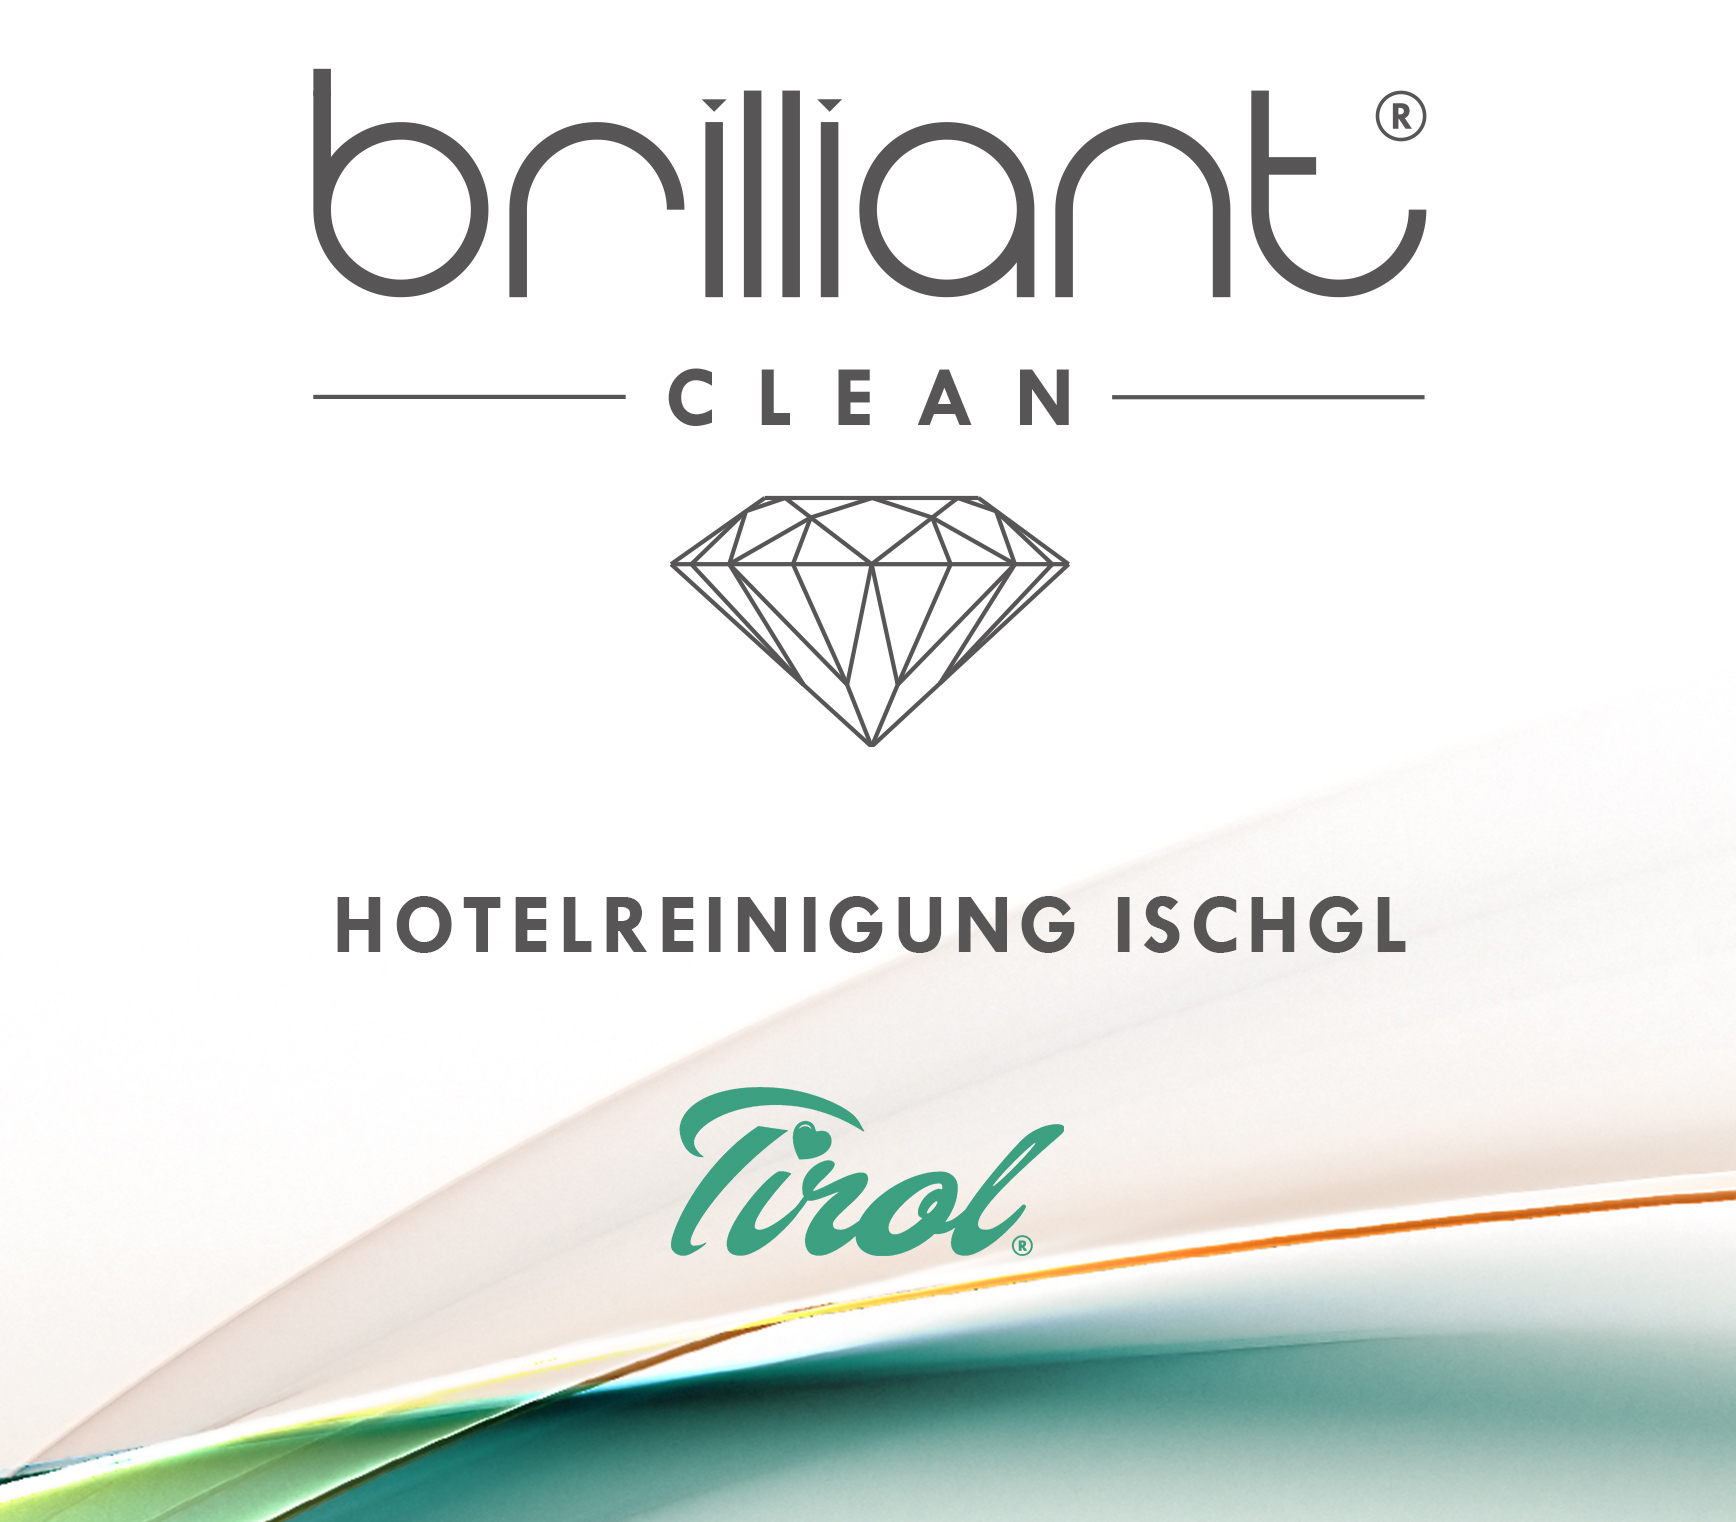 Hotelreinigung Ischgl - Brilliant Reinigung Tirol